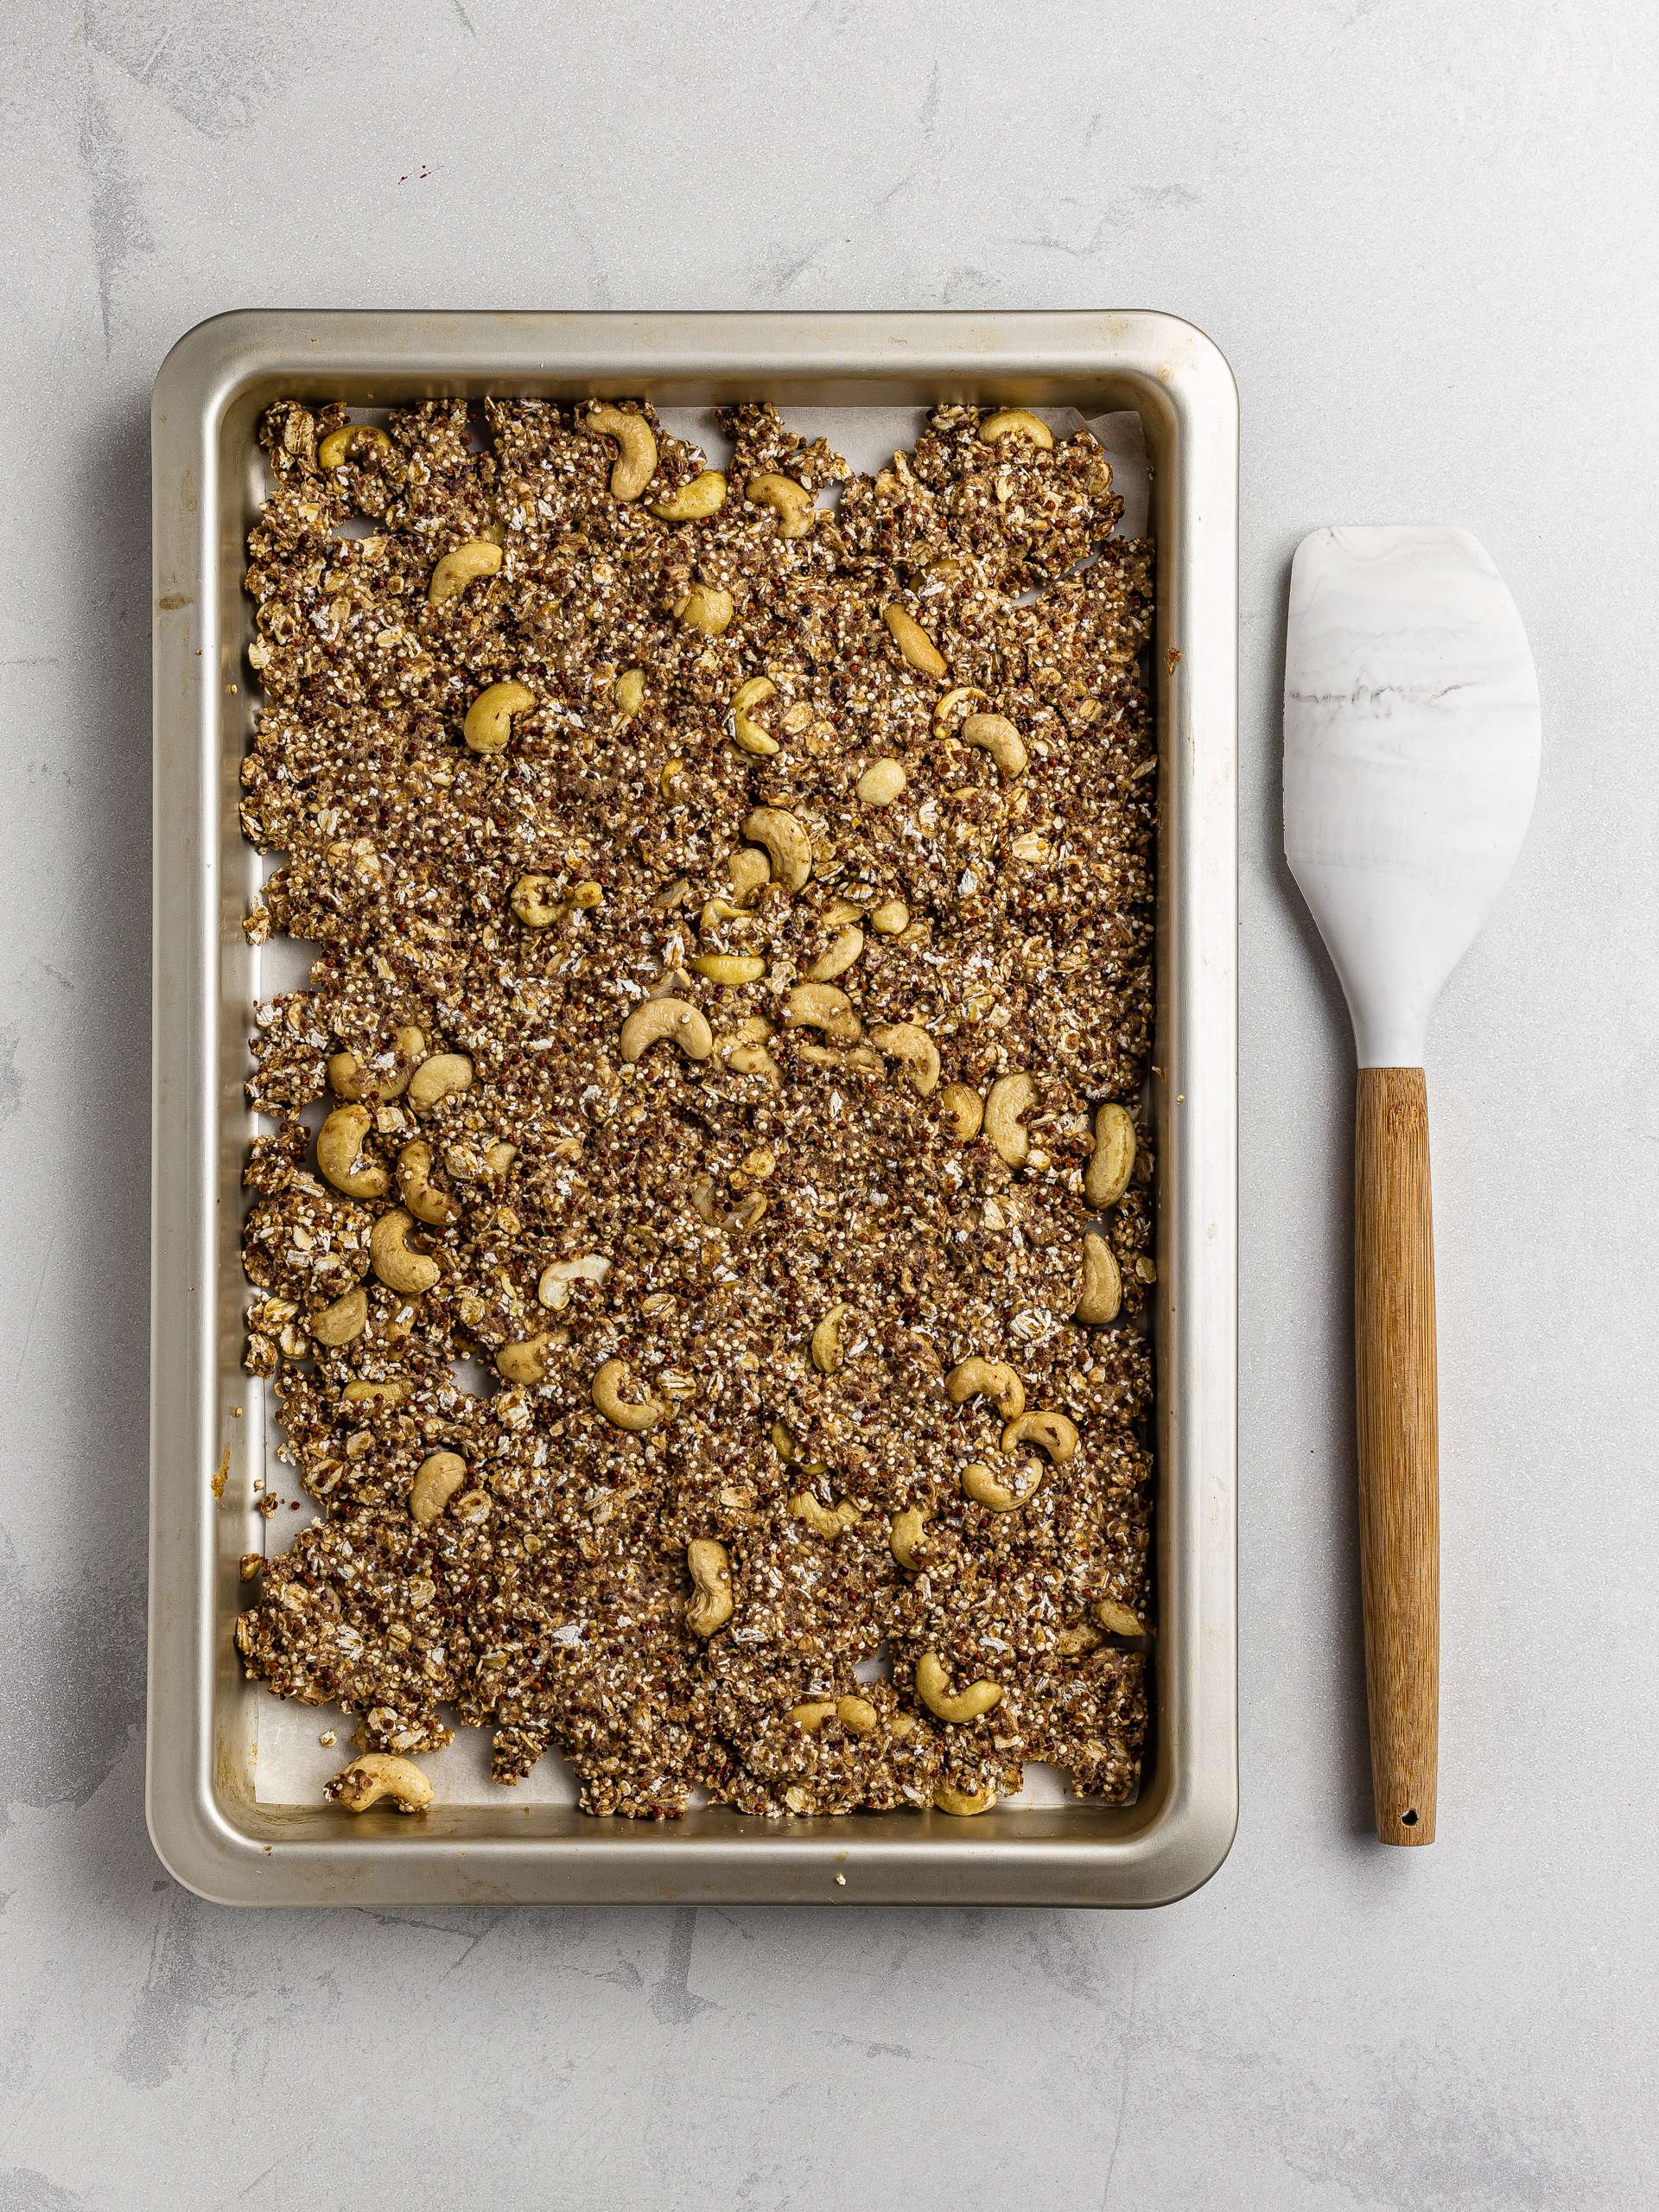  granola on a tray